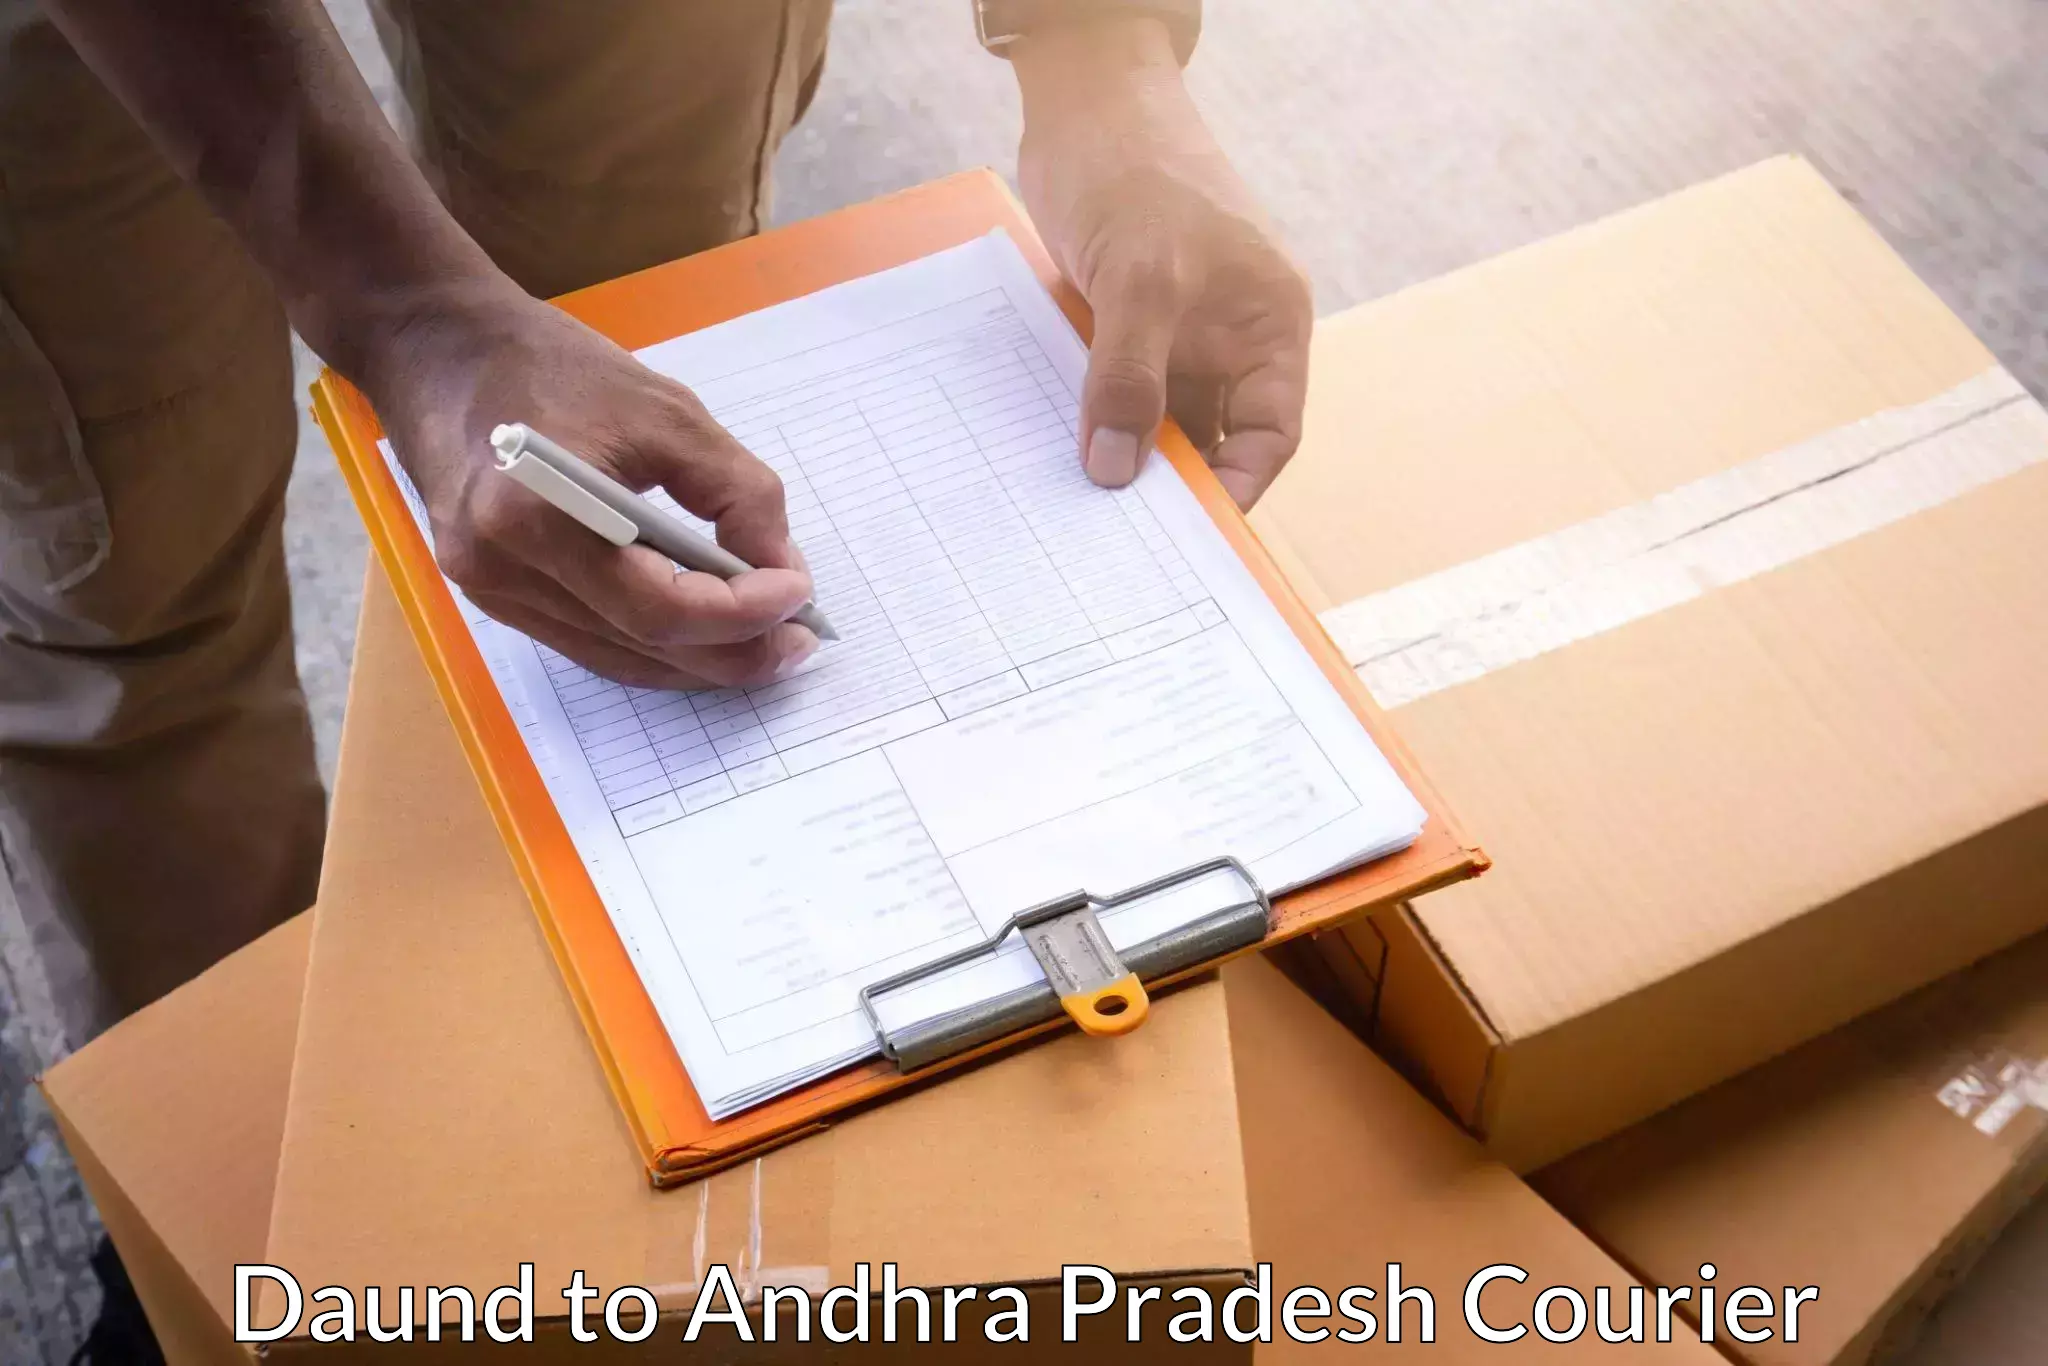 Expedited shipping methods Daund to Andhra Pradesh